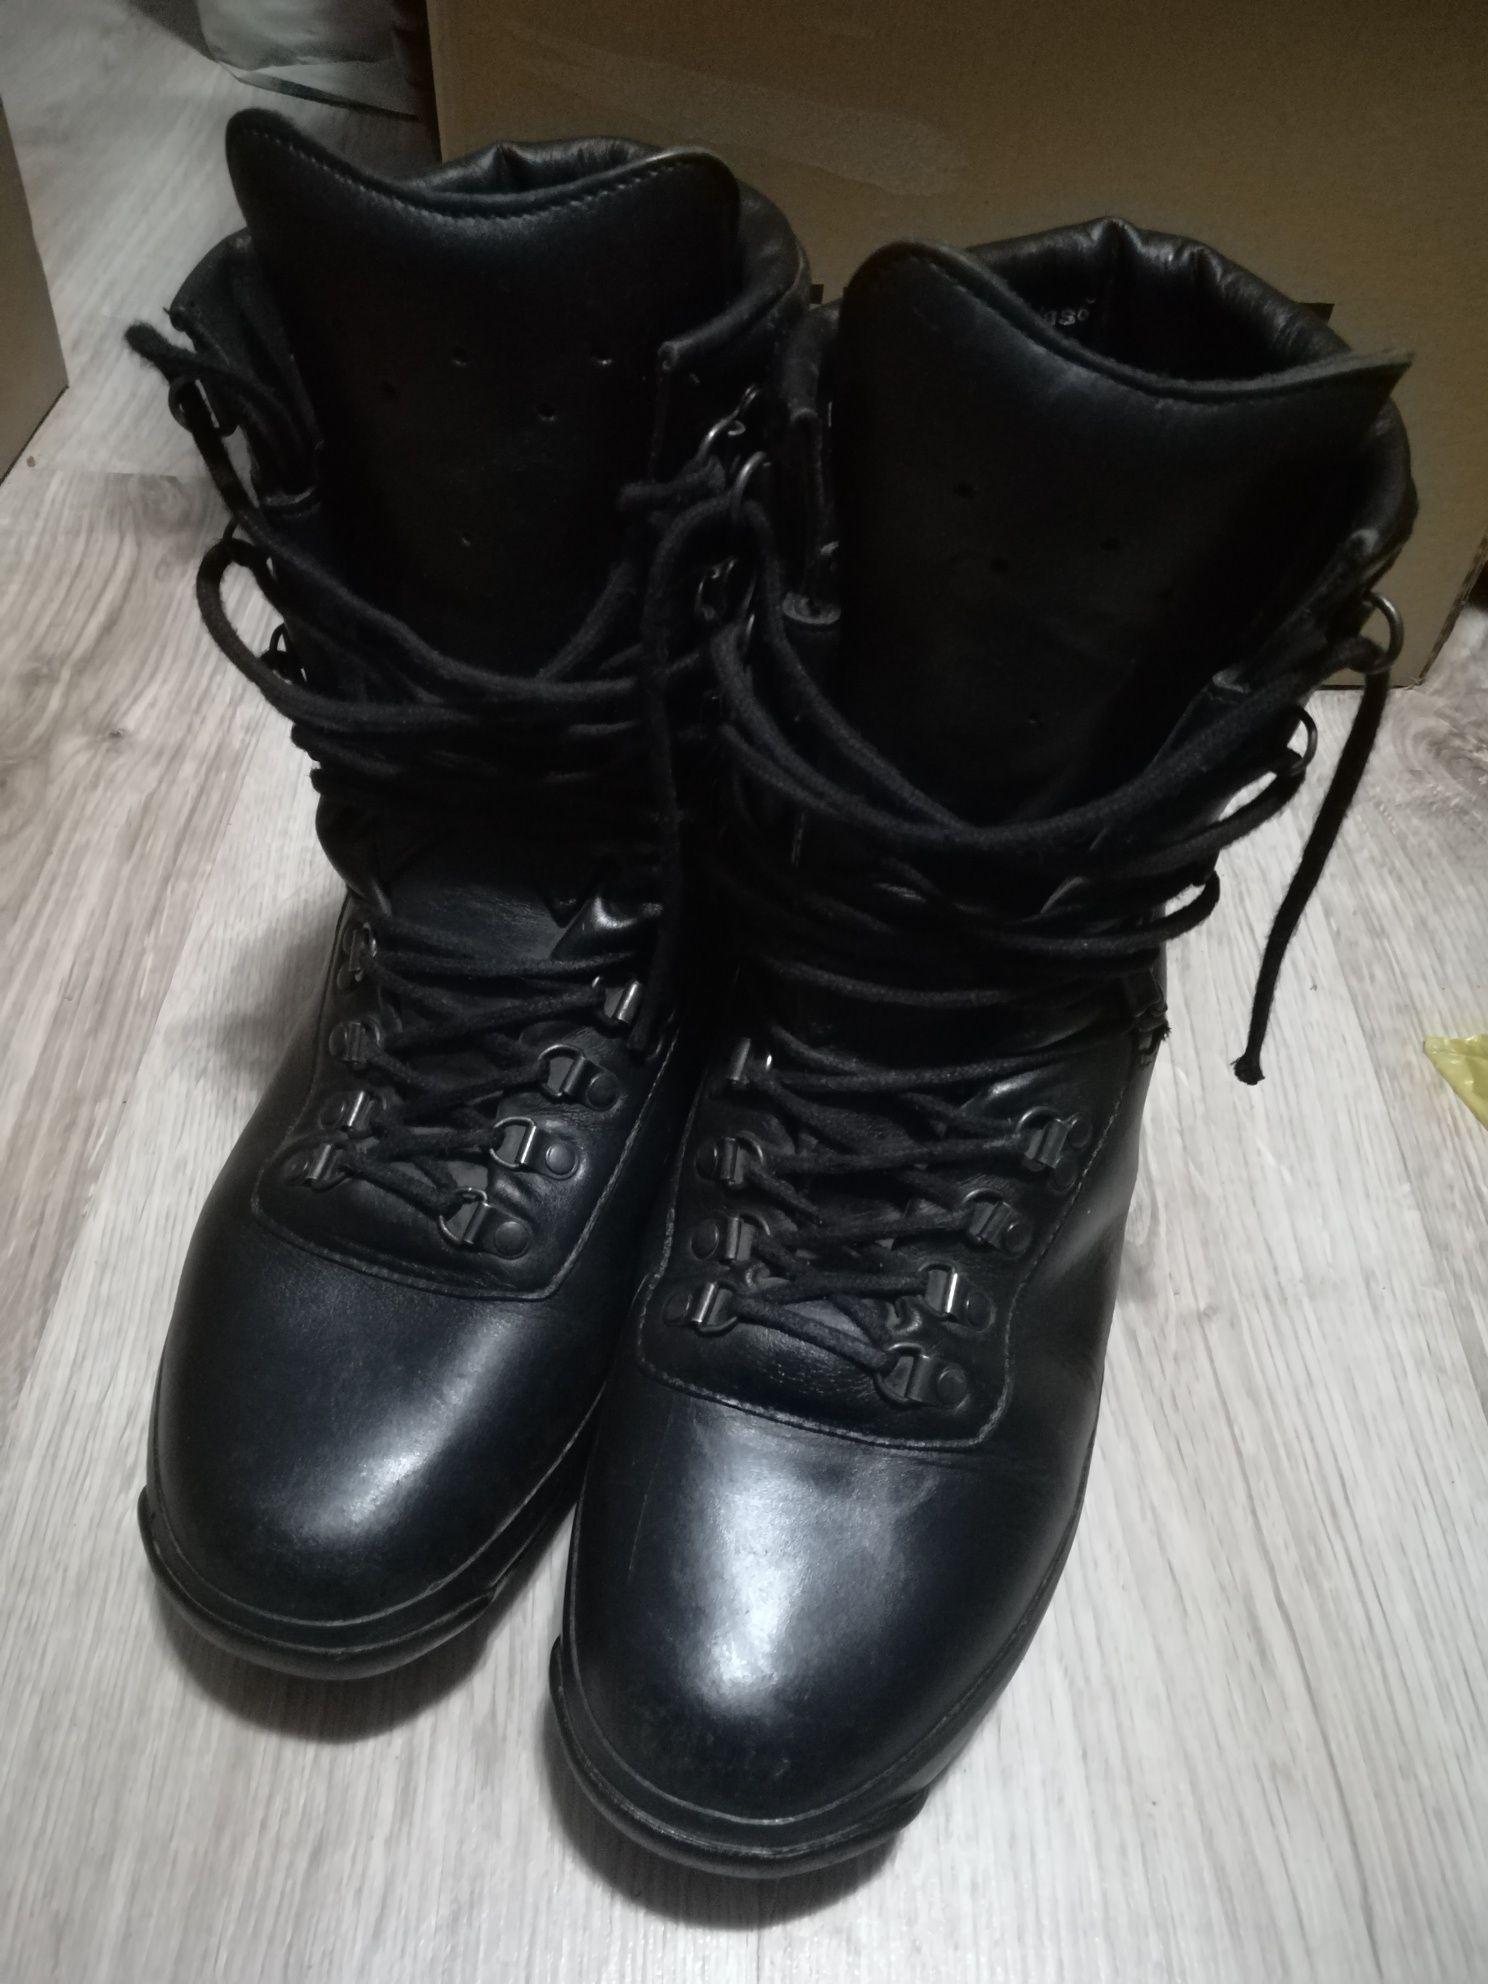 Wojskowe buty zimowe rozmiar 28 czyli 44, wz 928/MON